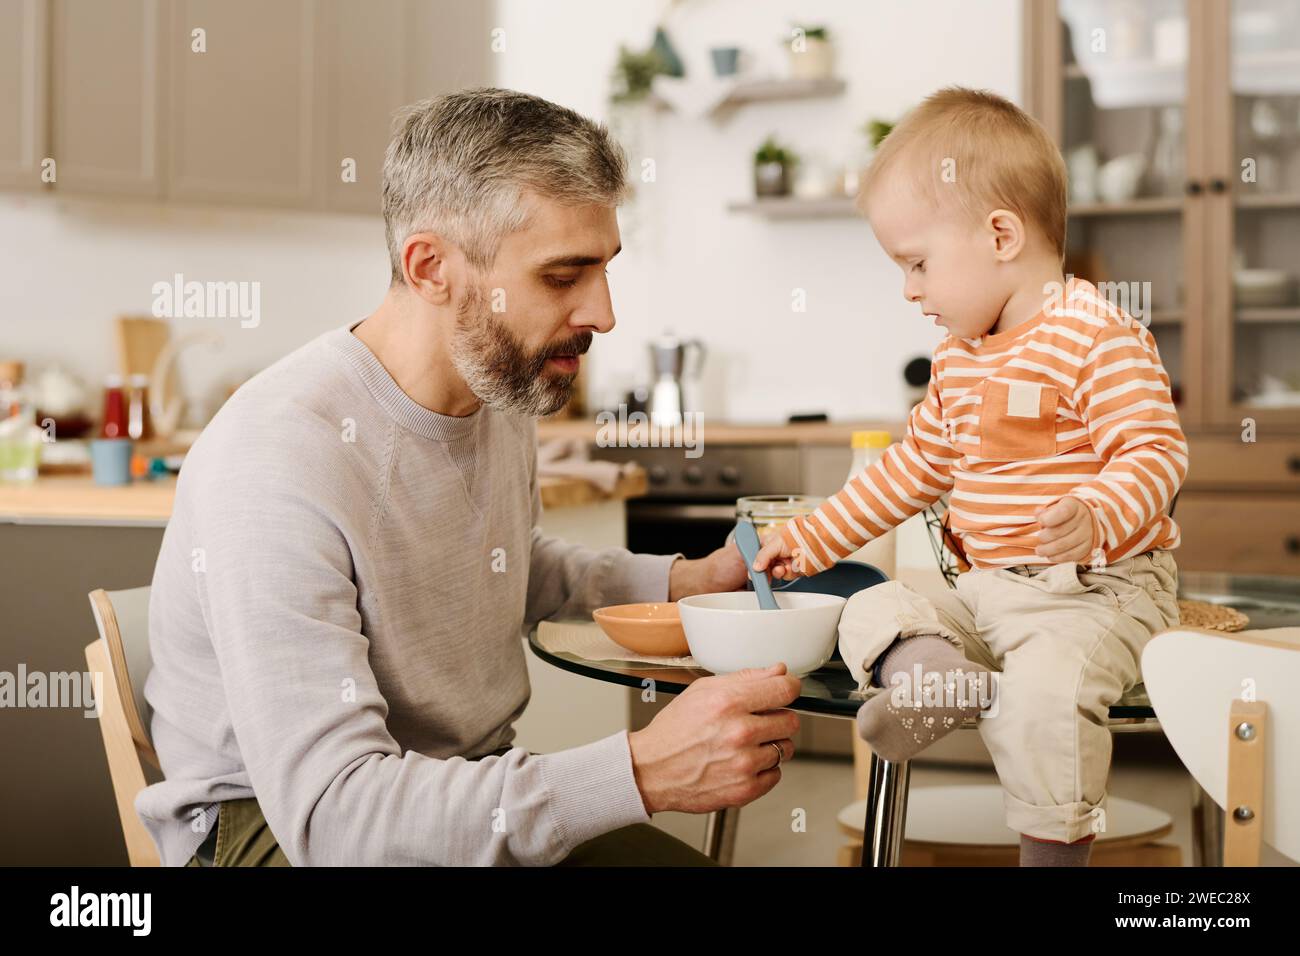 Der reife Vater sitzt am kleinen Tisch vor seinem liebenswerten Sohn und legt zum Frühstück einen Löffel in eine Schüssel mit Cornflakes oder anderen Speisen Stockfoto